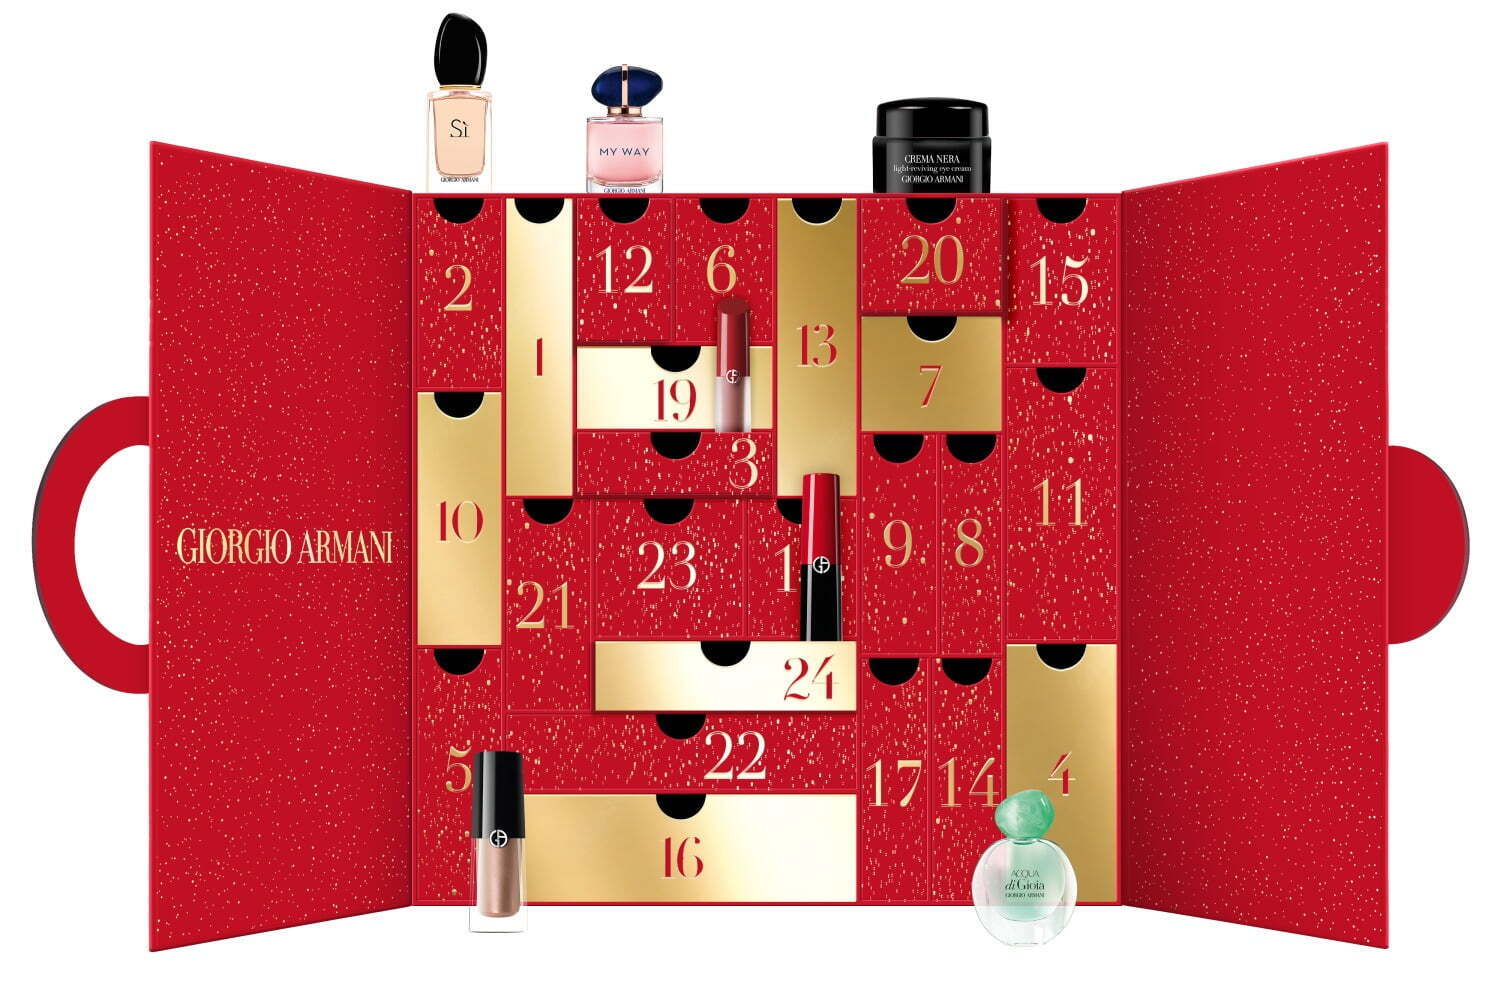 アルマーニ ビューティの人気香水「マイ ウェイ」23年クリスマス限定で